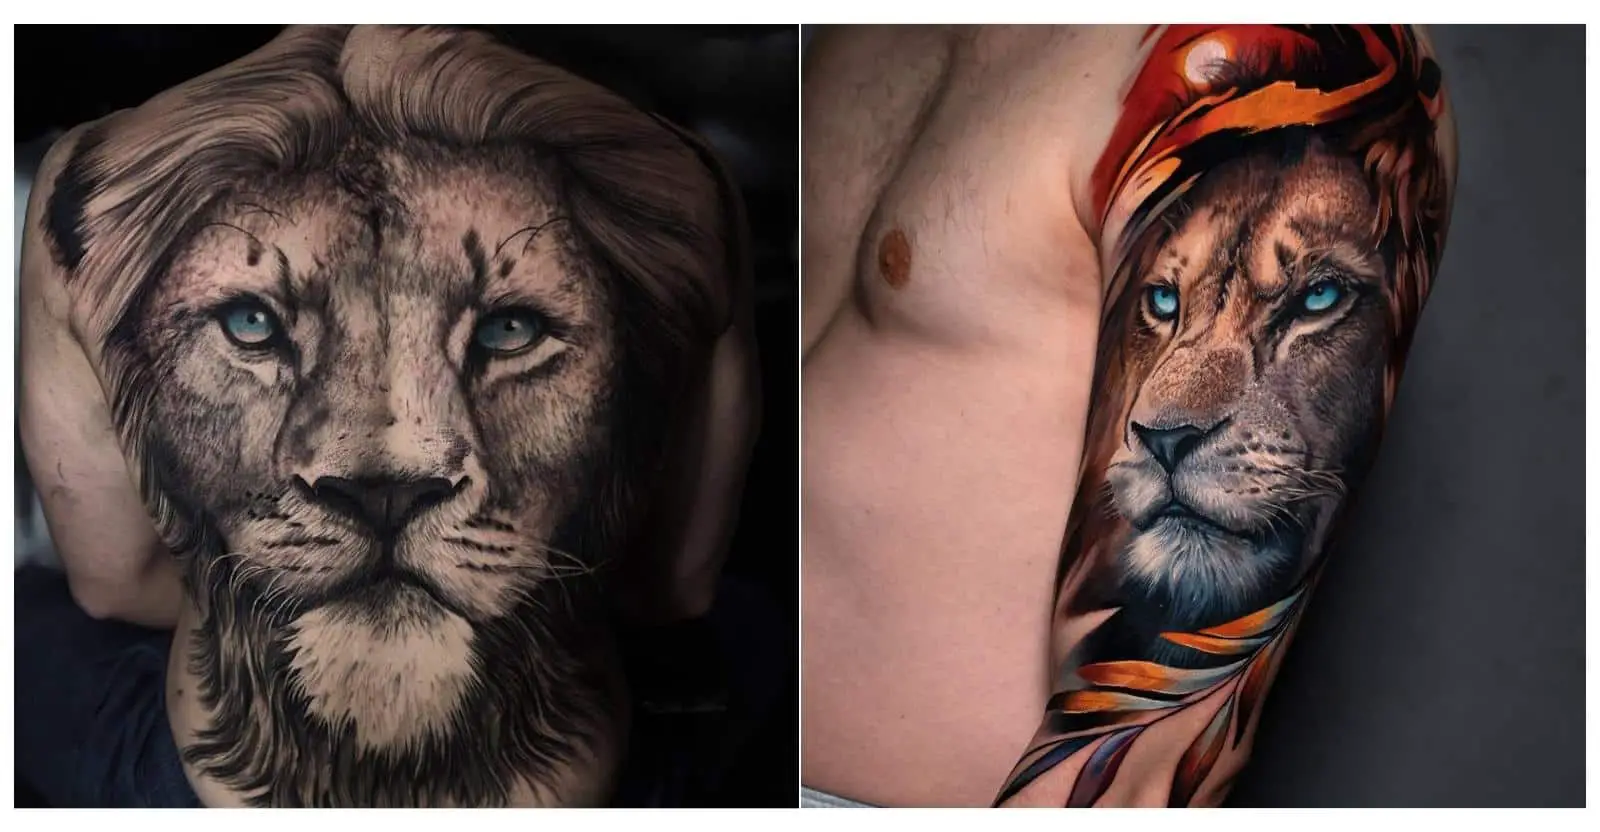 girly lion tattoo design by tattoosuzette on DeviantArt